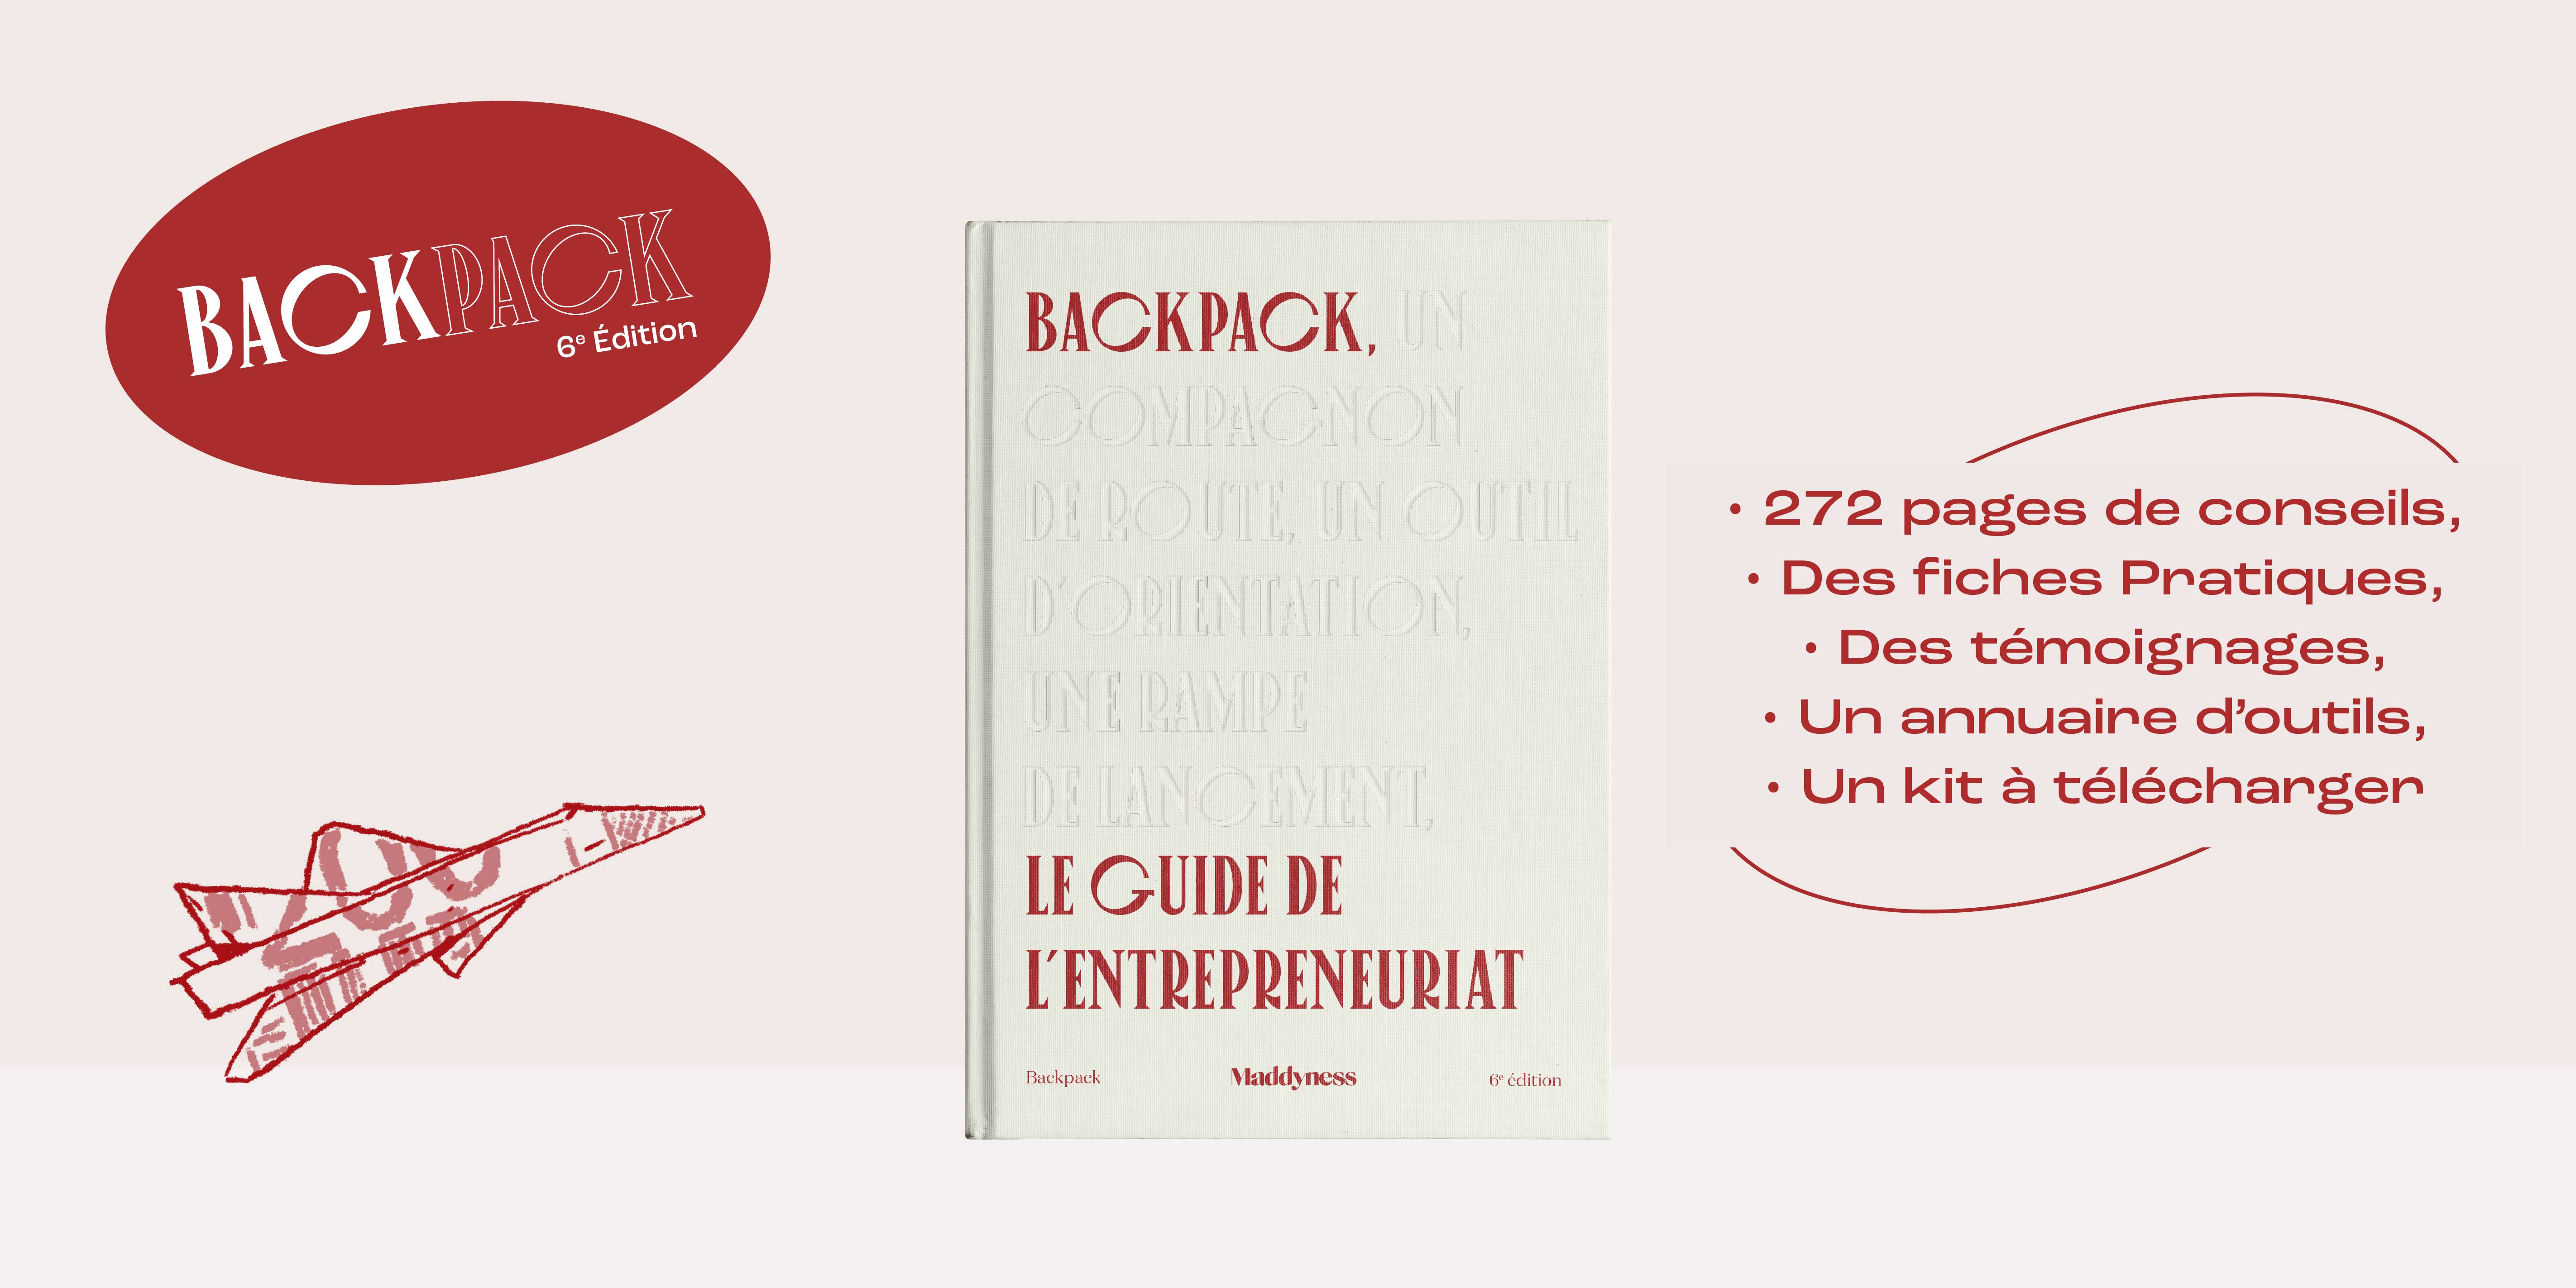 Backpack livre entrepreneuriat